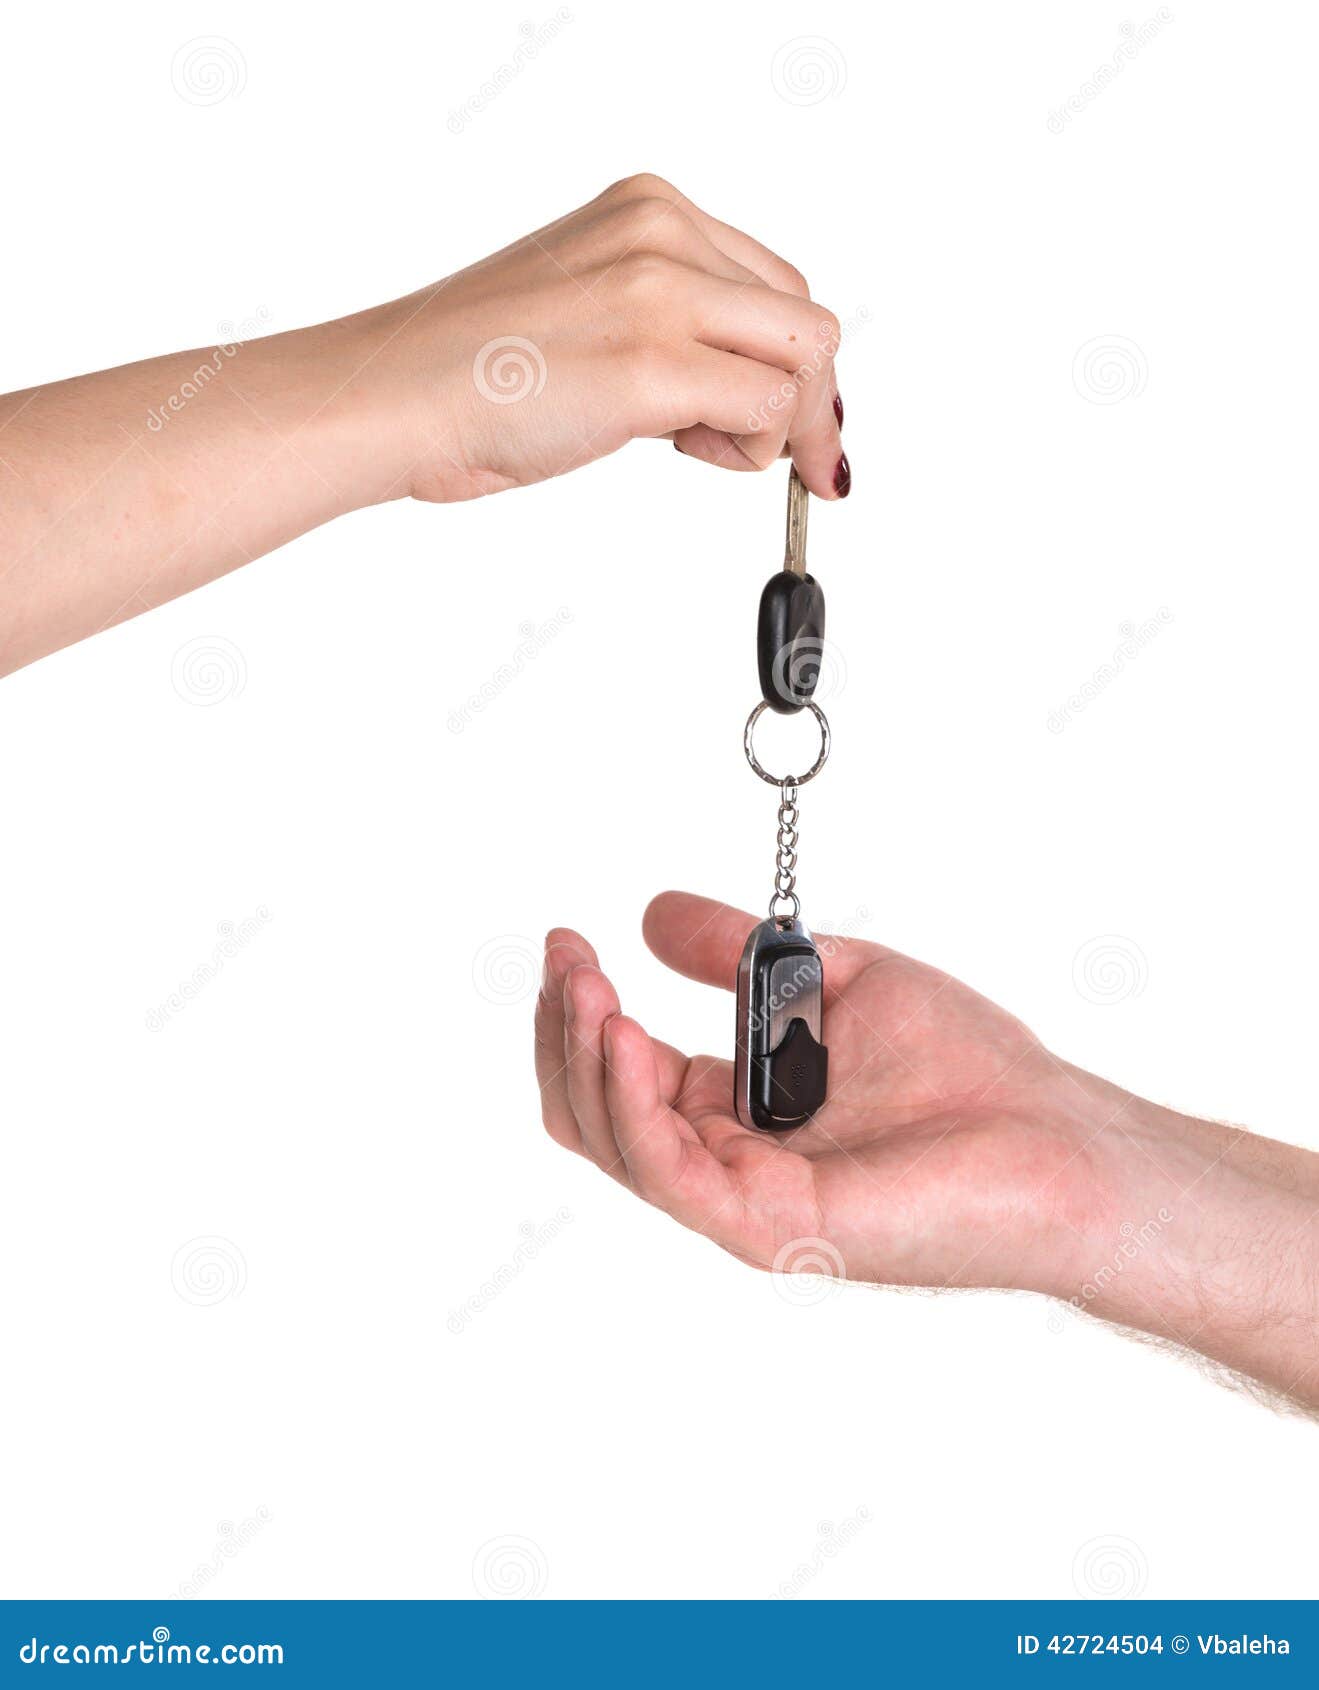 Мужчина дает ключи. Ключи от машины мужчиной и женщиной. Мужчина и женщина протягивают ключи от машины. Протянутая рука с ключами от машины. Девушка протягивает ключи.